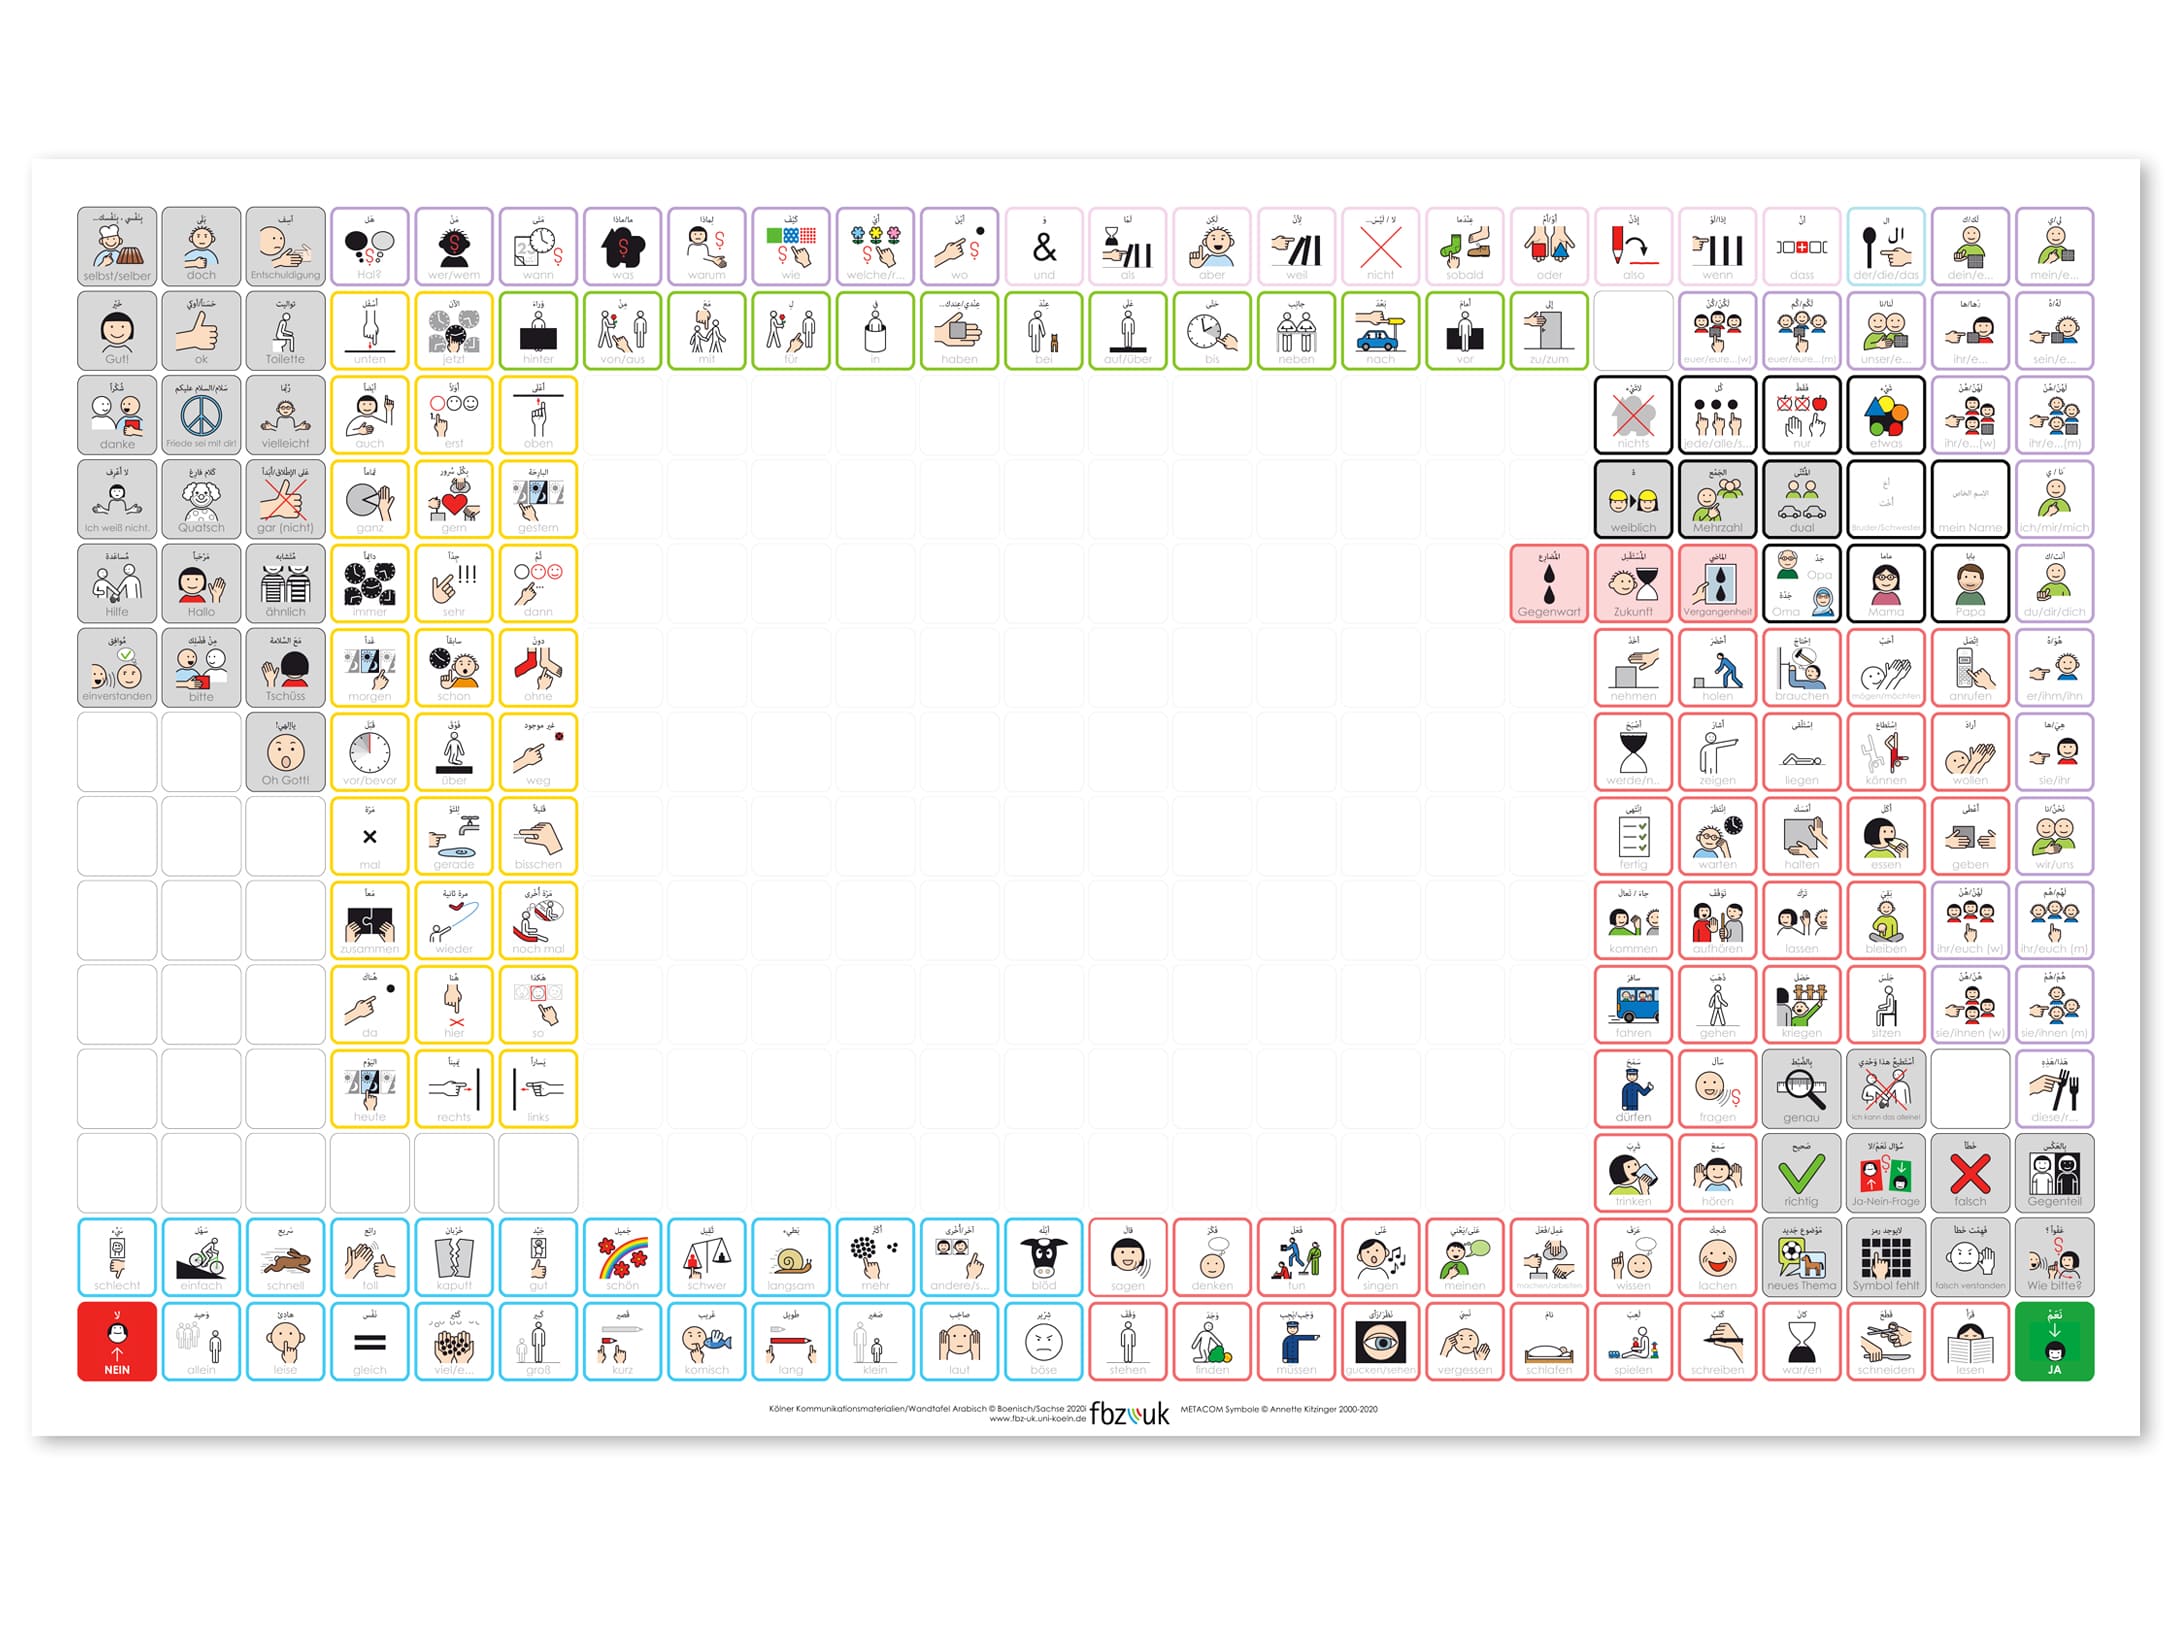 Kölner- A0 -Wandtafel mit dem Kernvokabular des Kommunikationsordners (336) (arabisch) mit Klettsymbolen